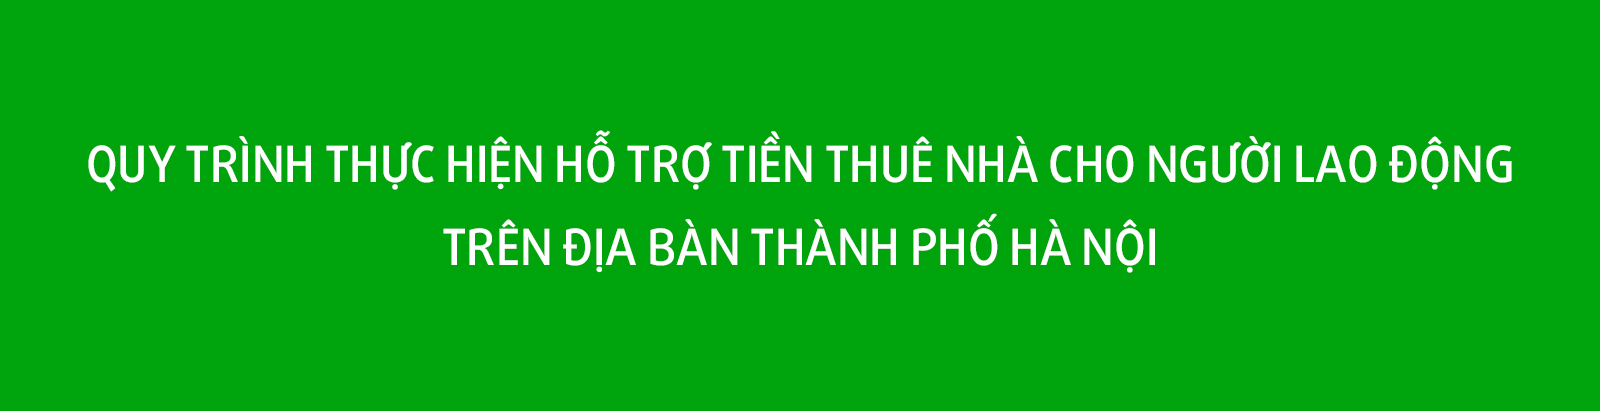 Quy trình thực hiện hỗ trợ tiền thuê nhà cho người lao động trên địa bàn thành phố Hà Nội